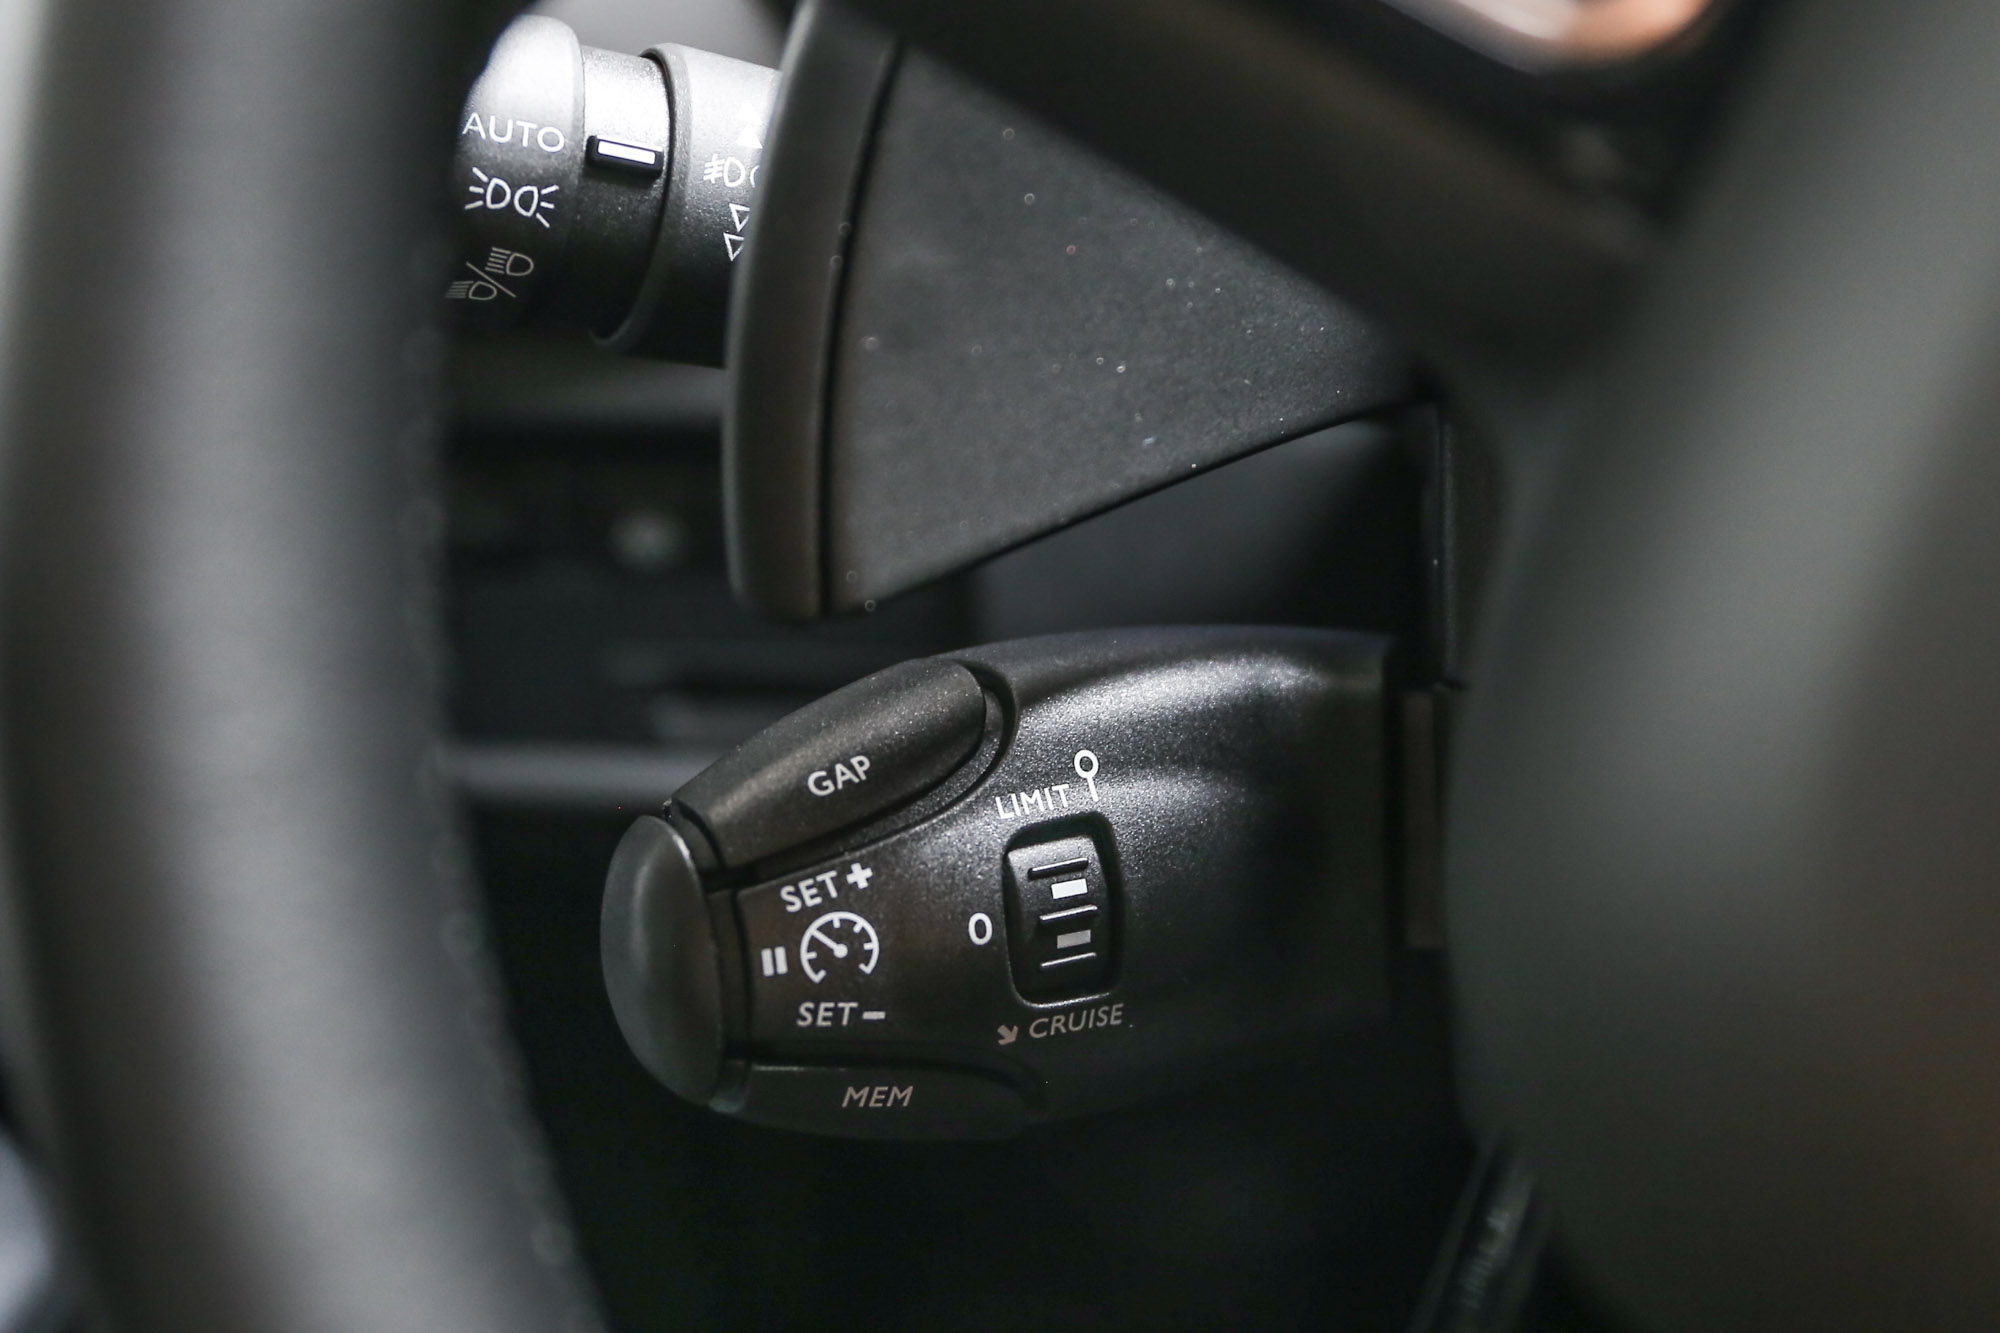 標配全速域的 ACC 主動式定速巡航附自動煞車及再啟動功能，設定的介面仍是傳統的方向盤後方撥桿，與當前整合至方向盤上的設計有所不同，需要適應。